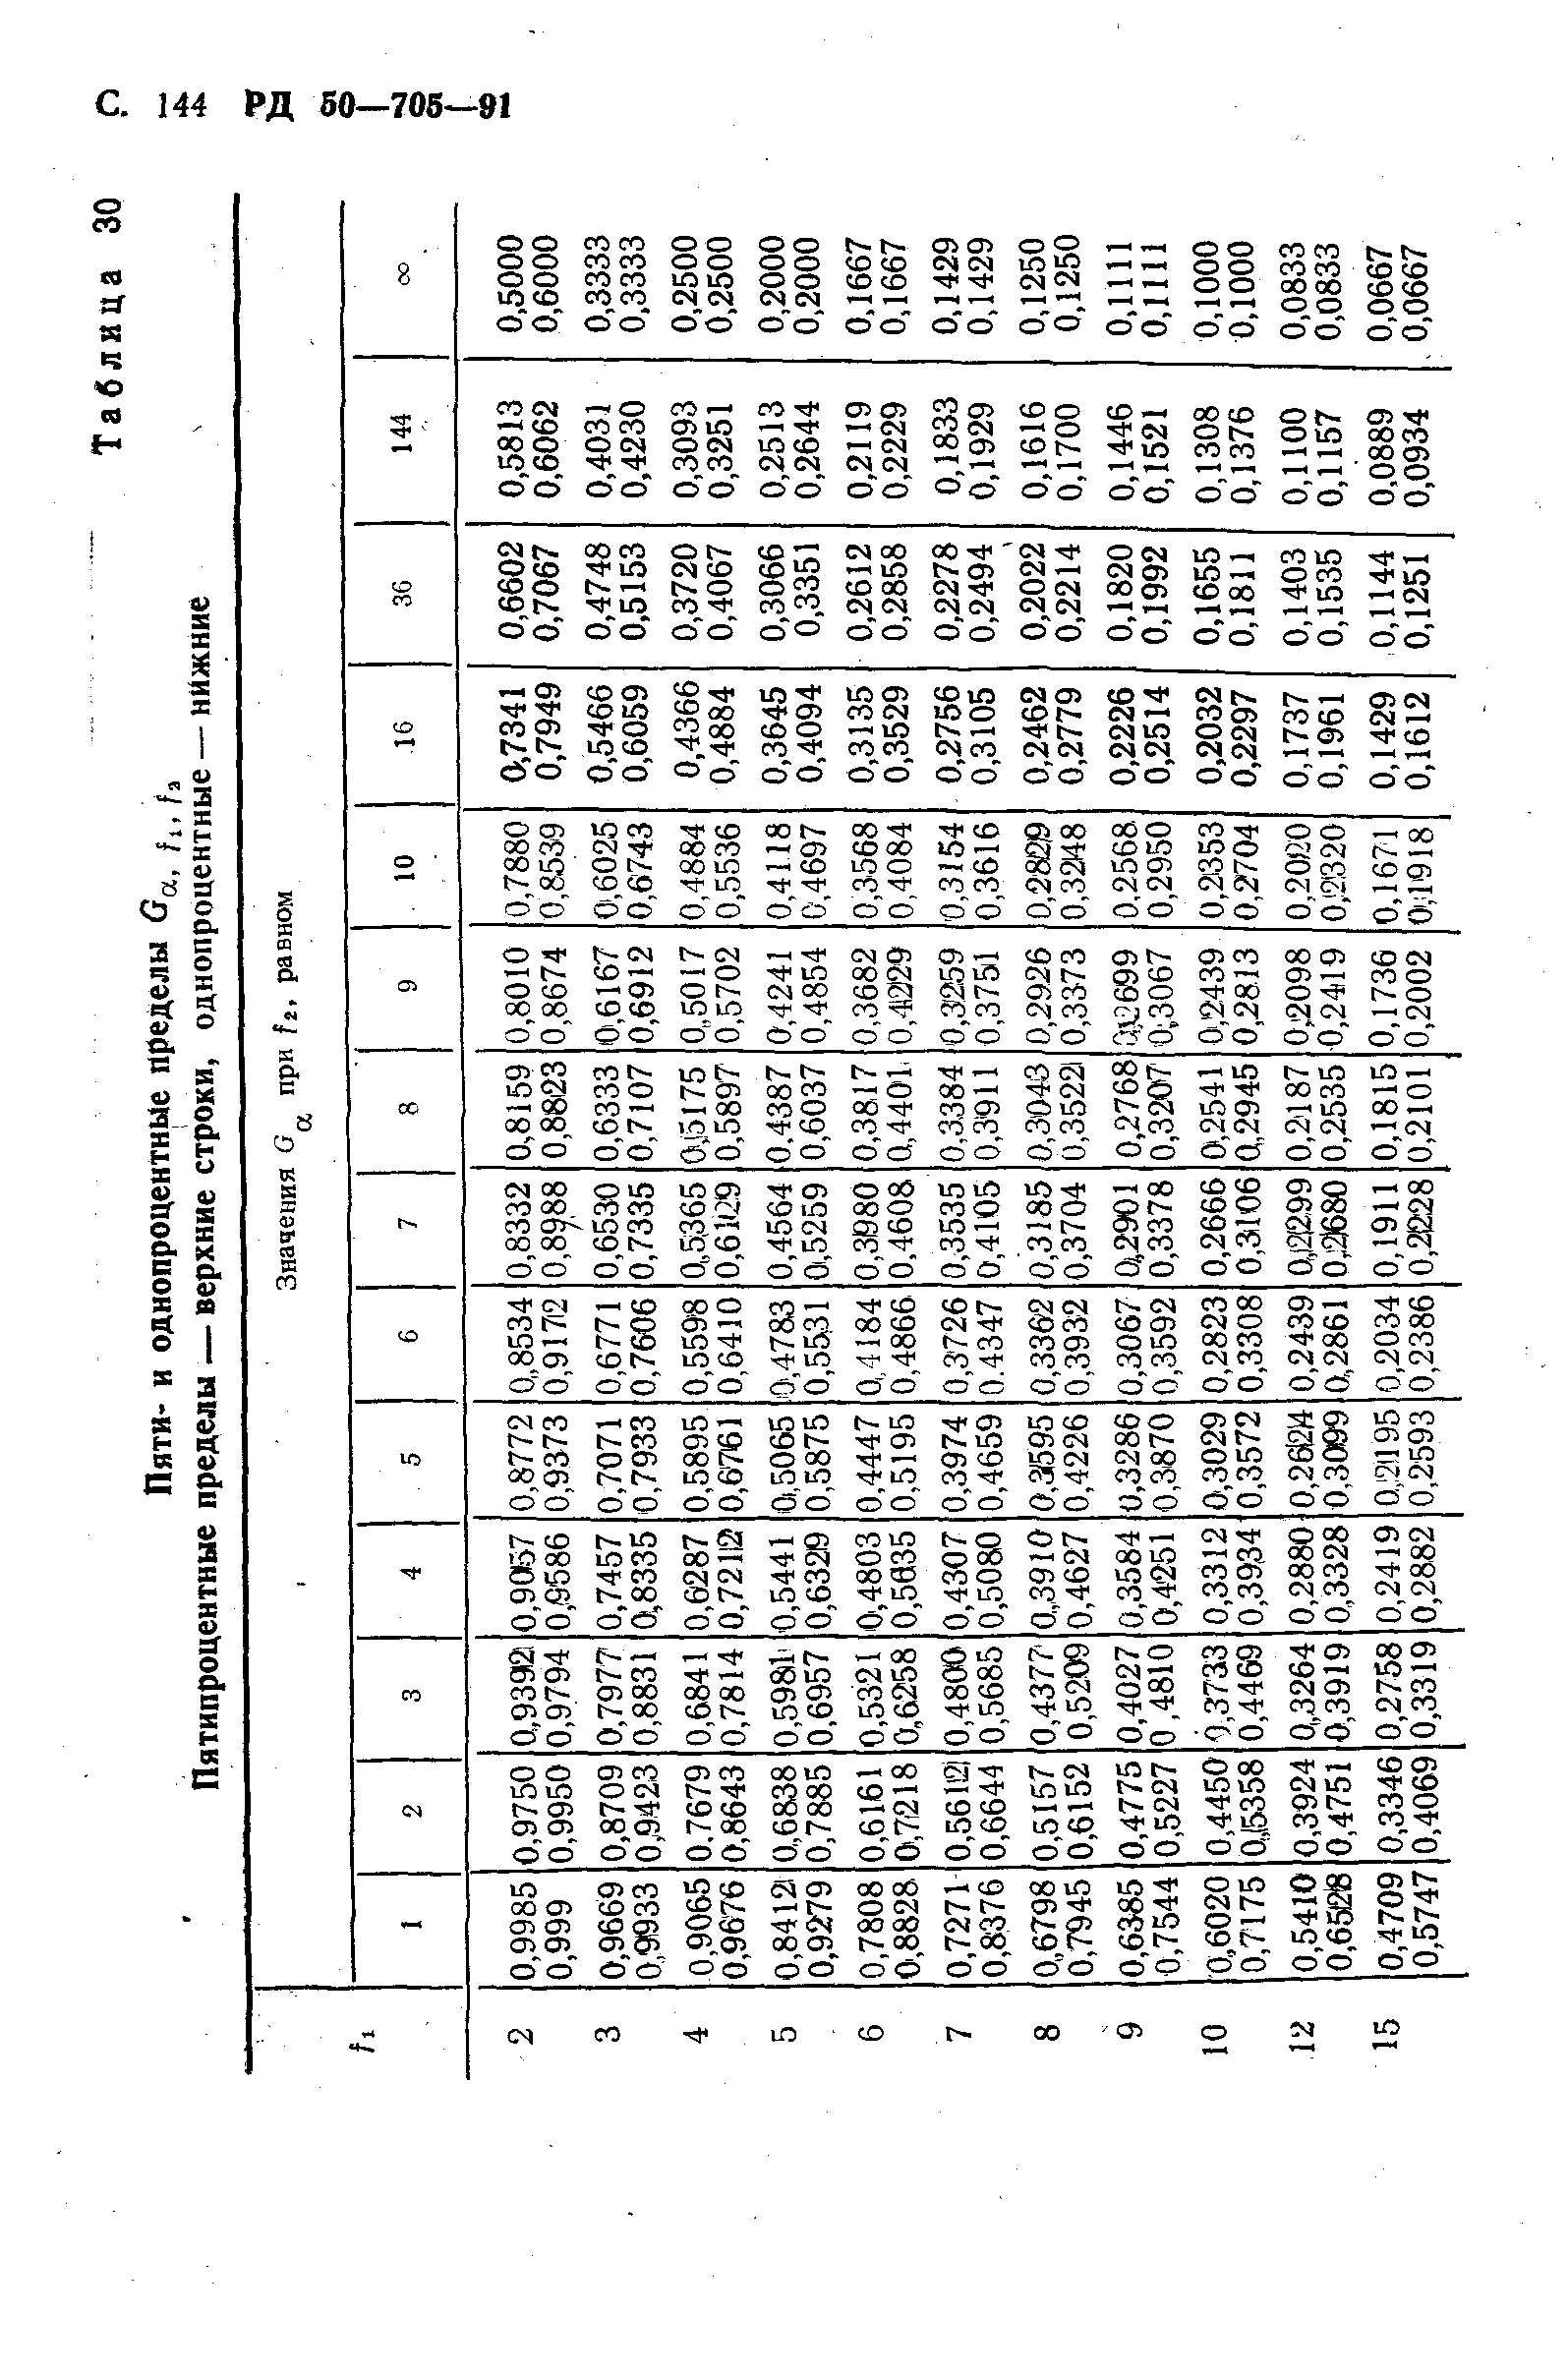 РД 50-705-91